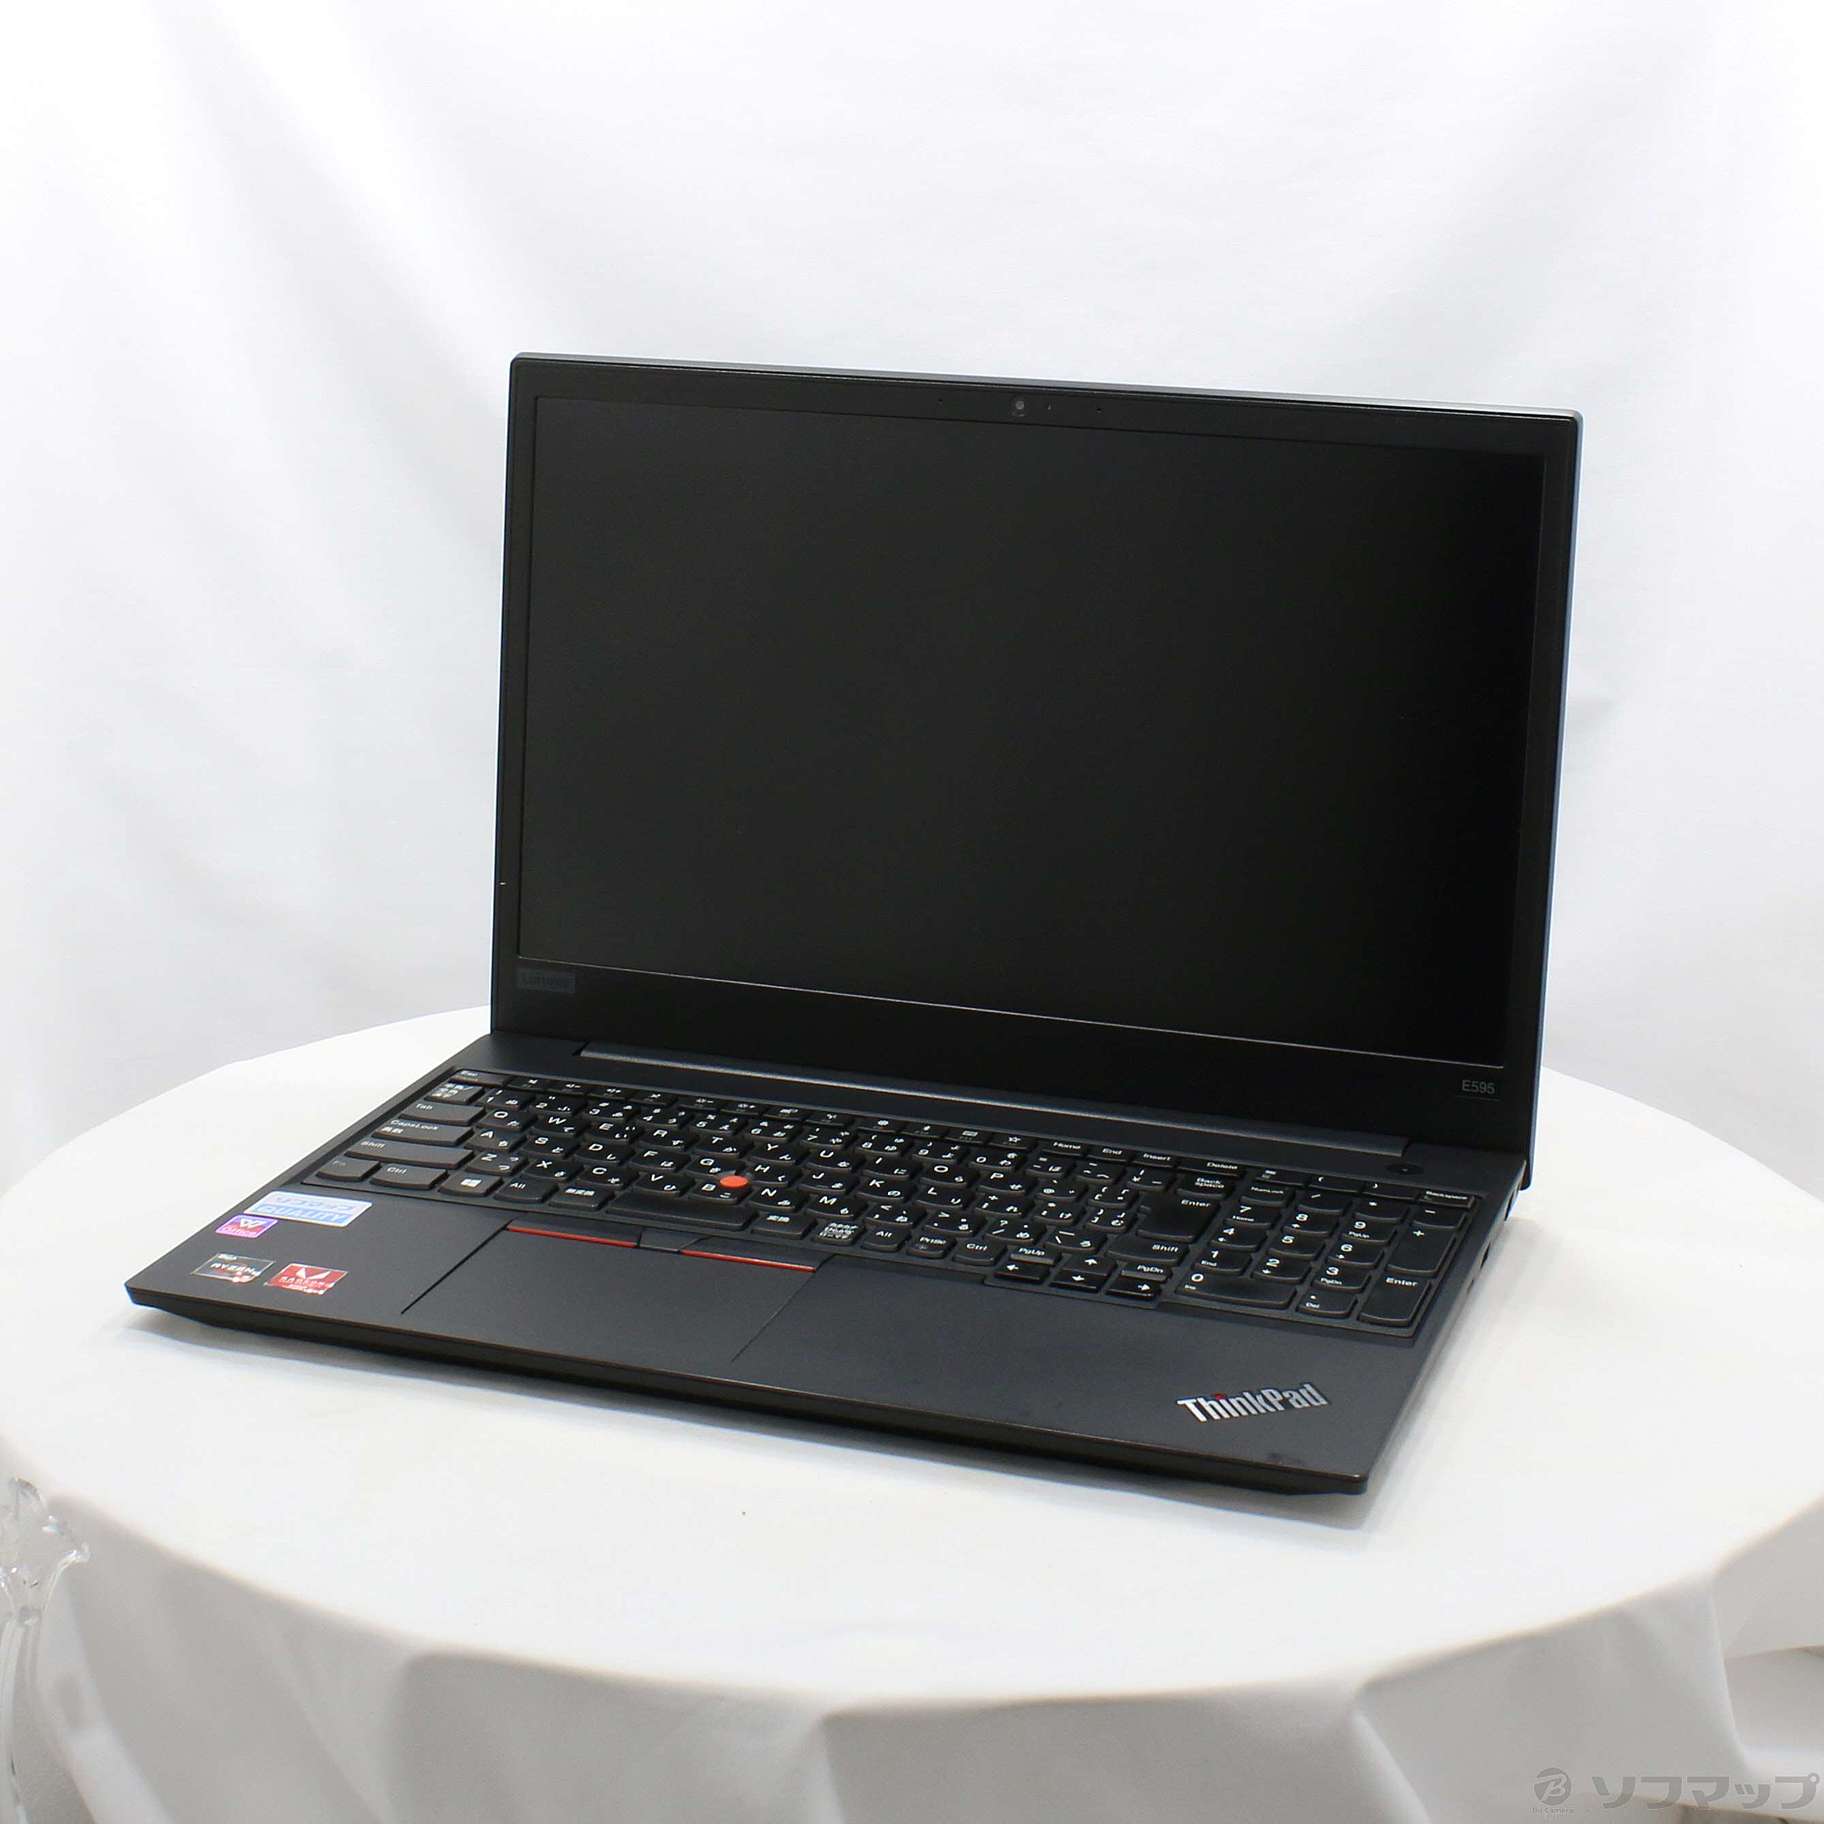 【ほぼ新品】ThinkPad E595 (AMD)